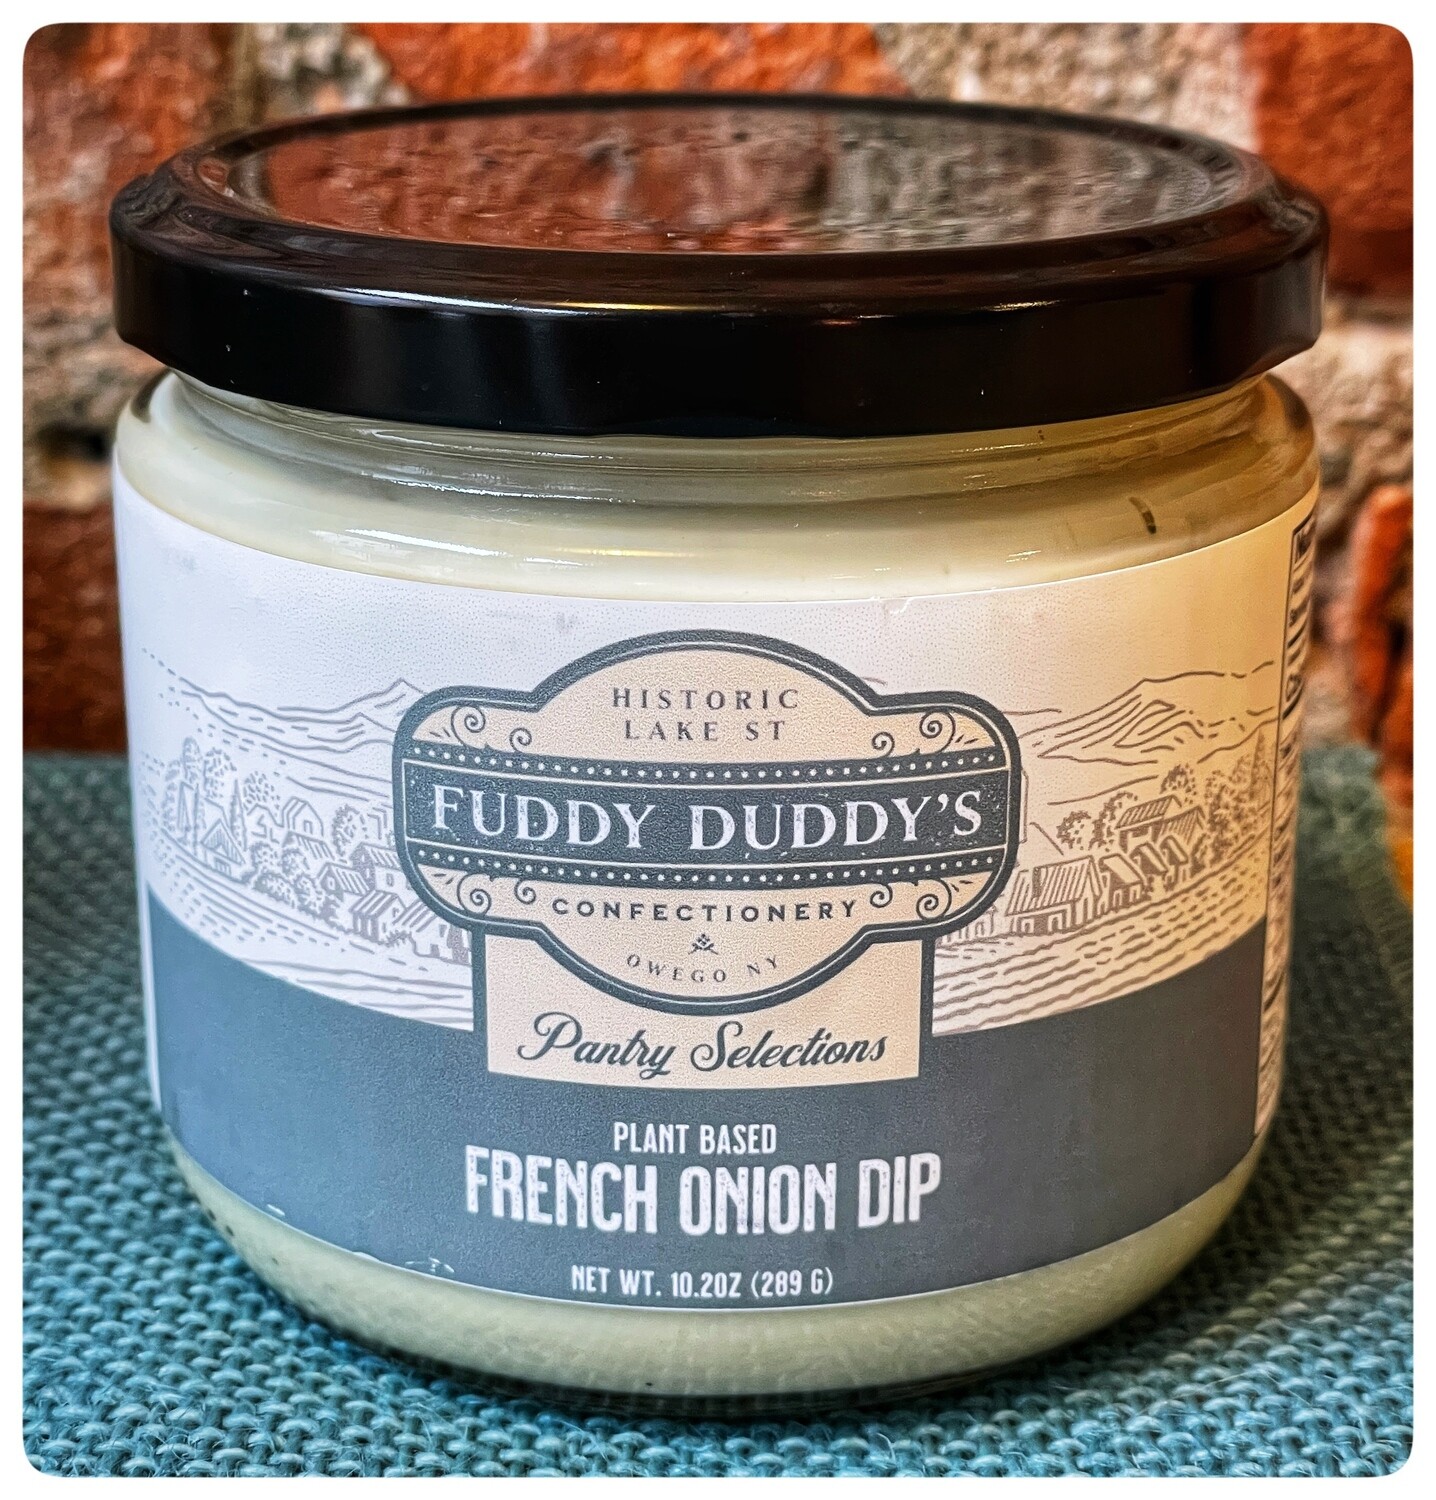 Fuddy Duddy's French Onion Dip